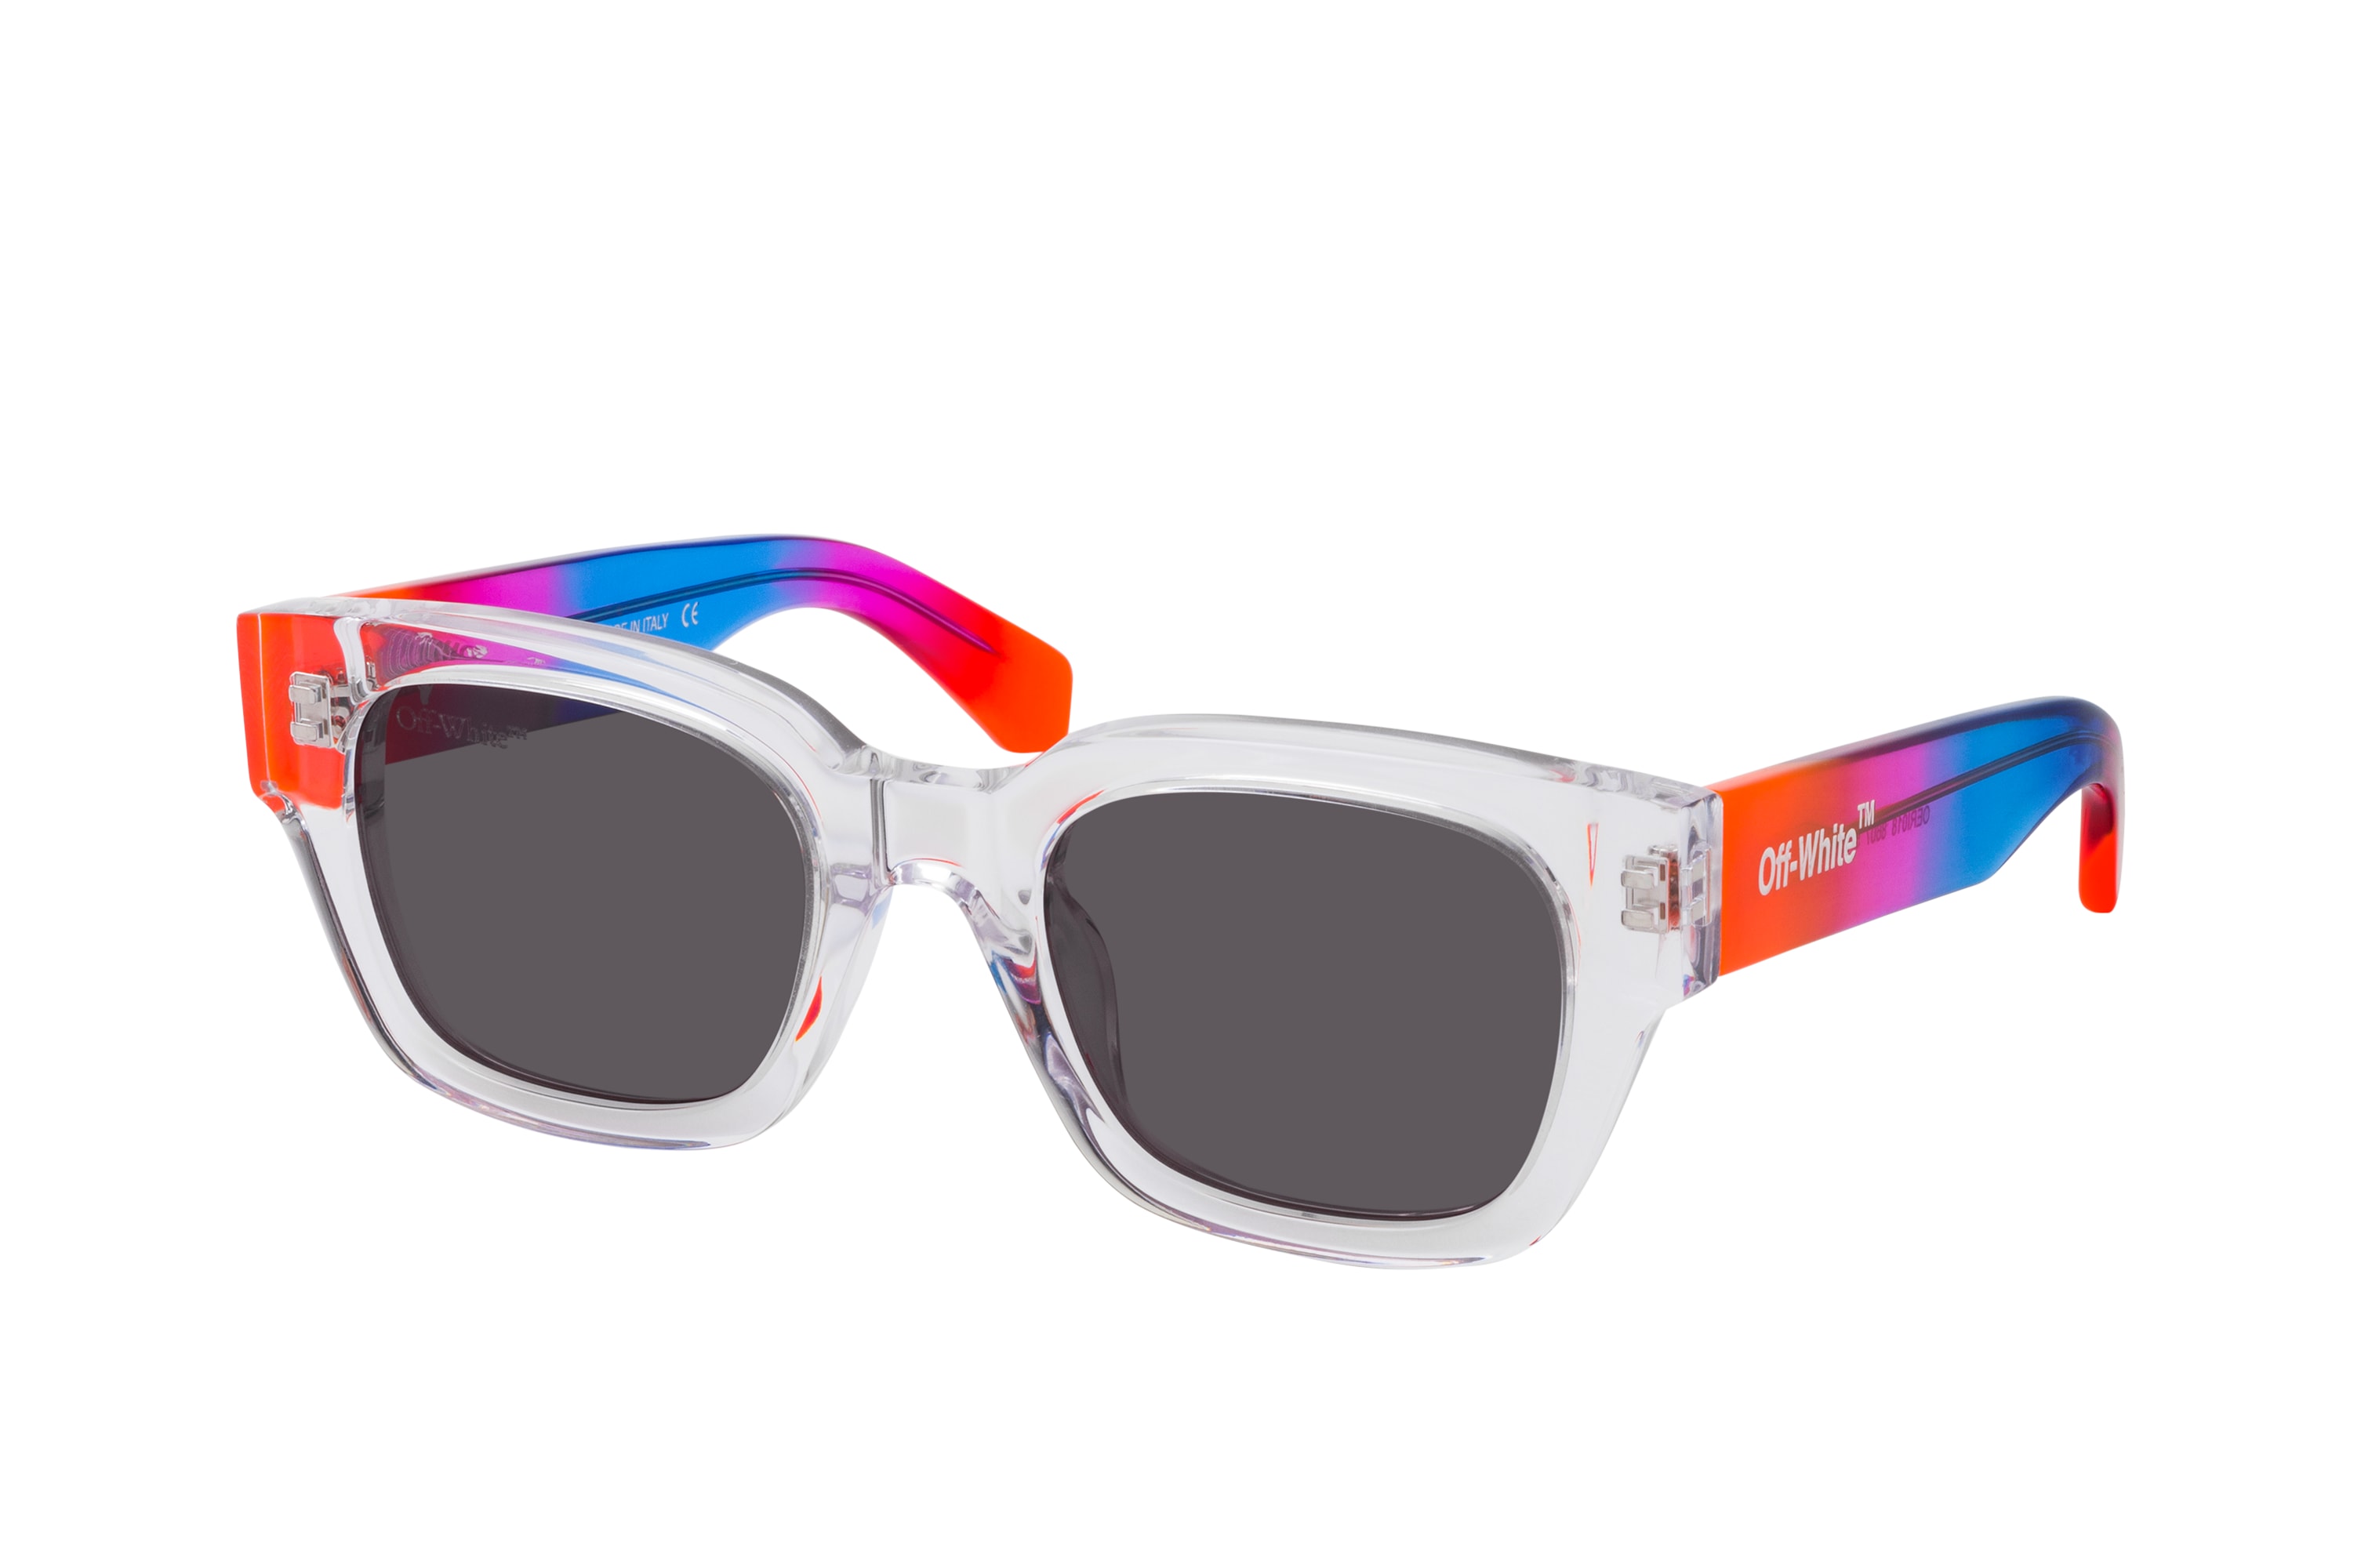 Buy Off-White NASSAU OERI017 1007 Sunglasses